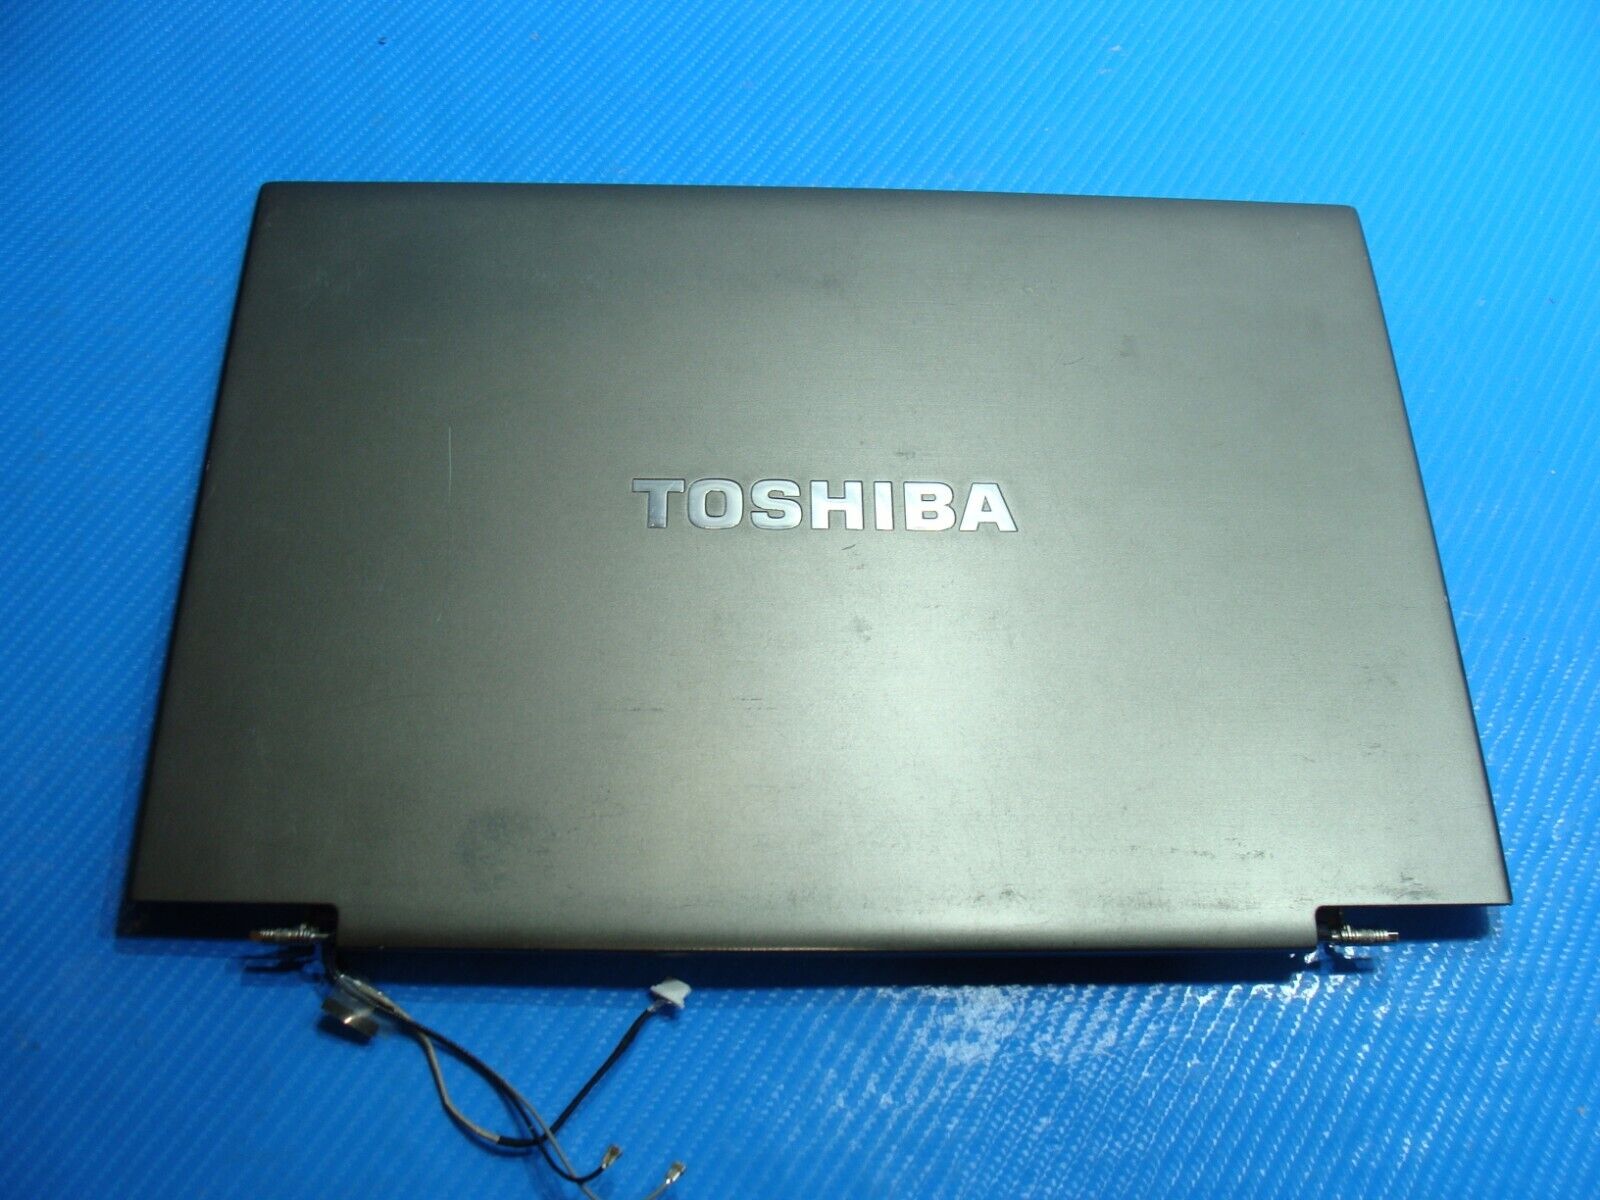 Toshiba Portege Z930 13.3